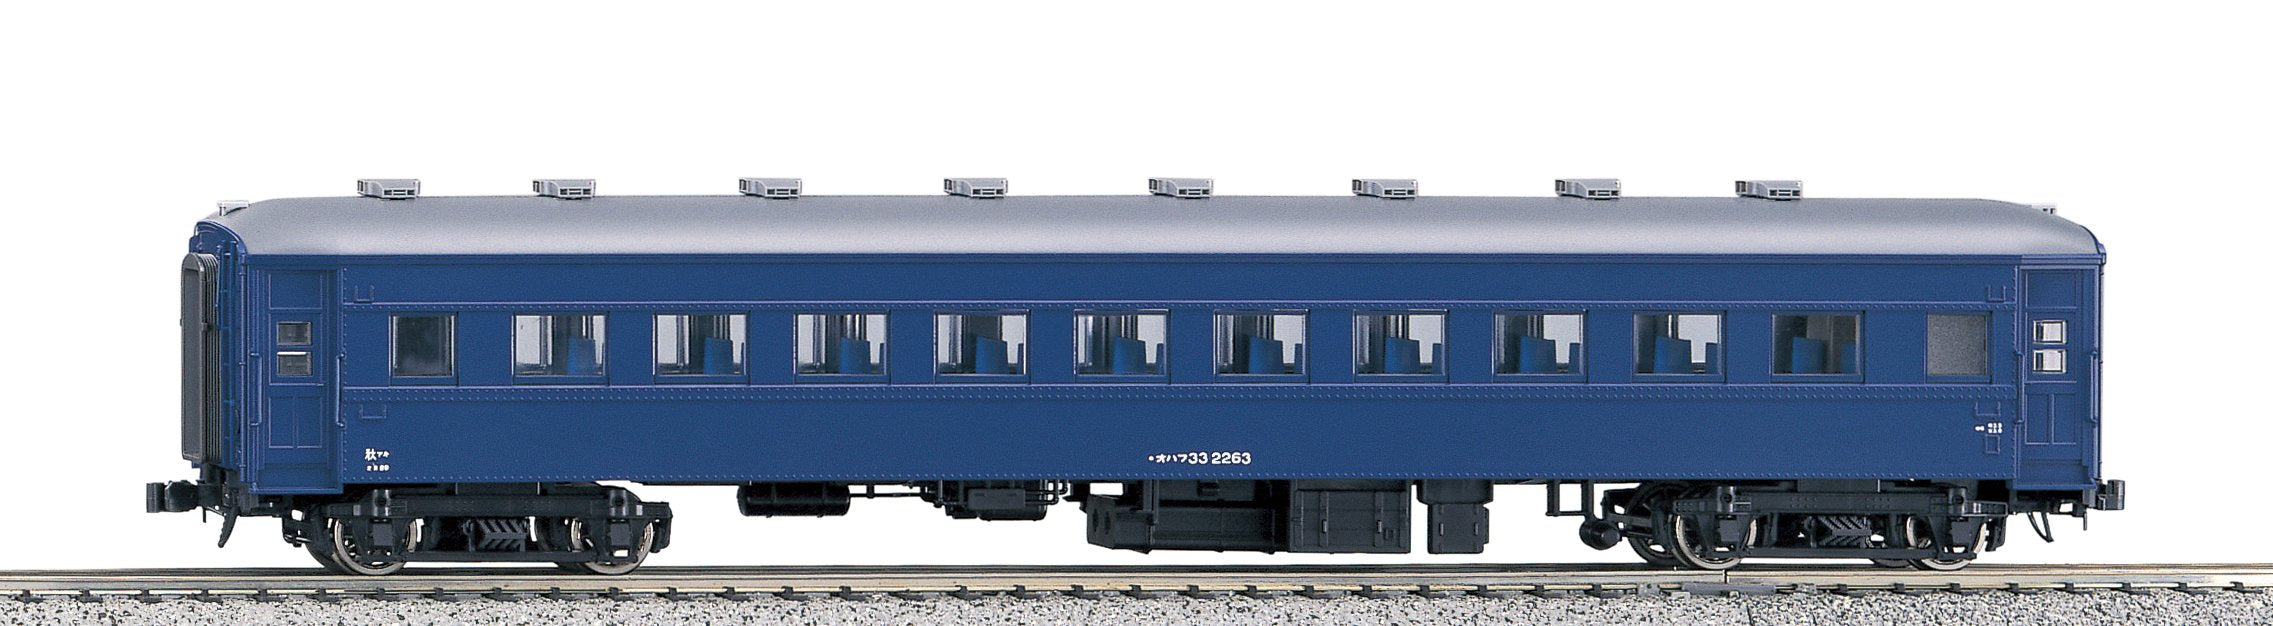 Kato HO gauge 1-513 Ohafu 33 Blue Passenger Car Model Railroad Supplies NEW_1